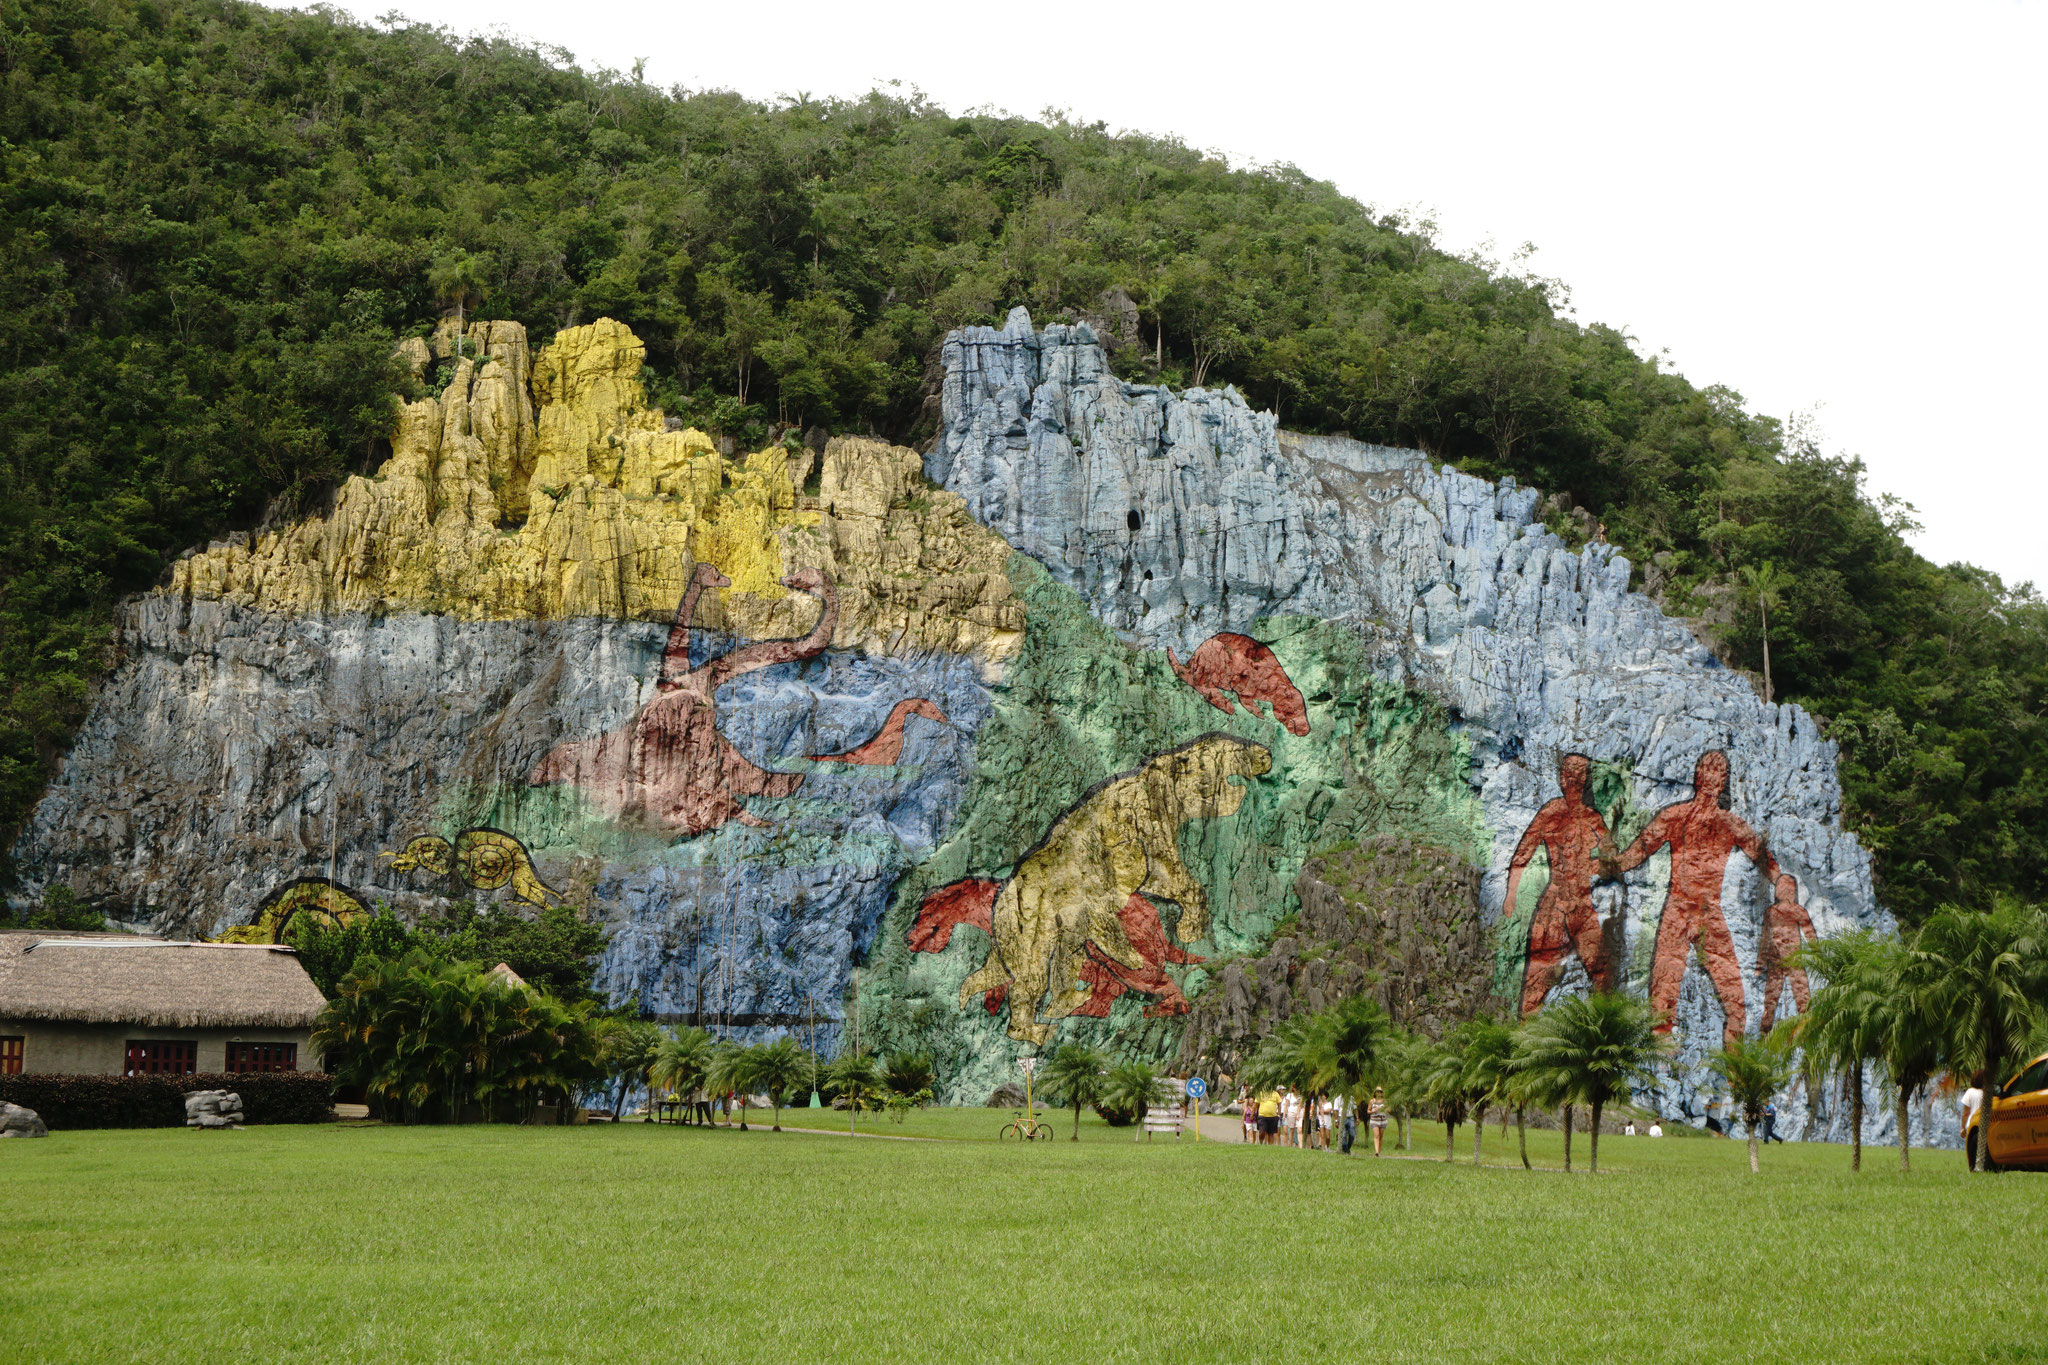 Kuba - Mural de la Prehistoria: Bunt bemalte Wand